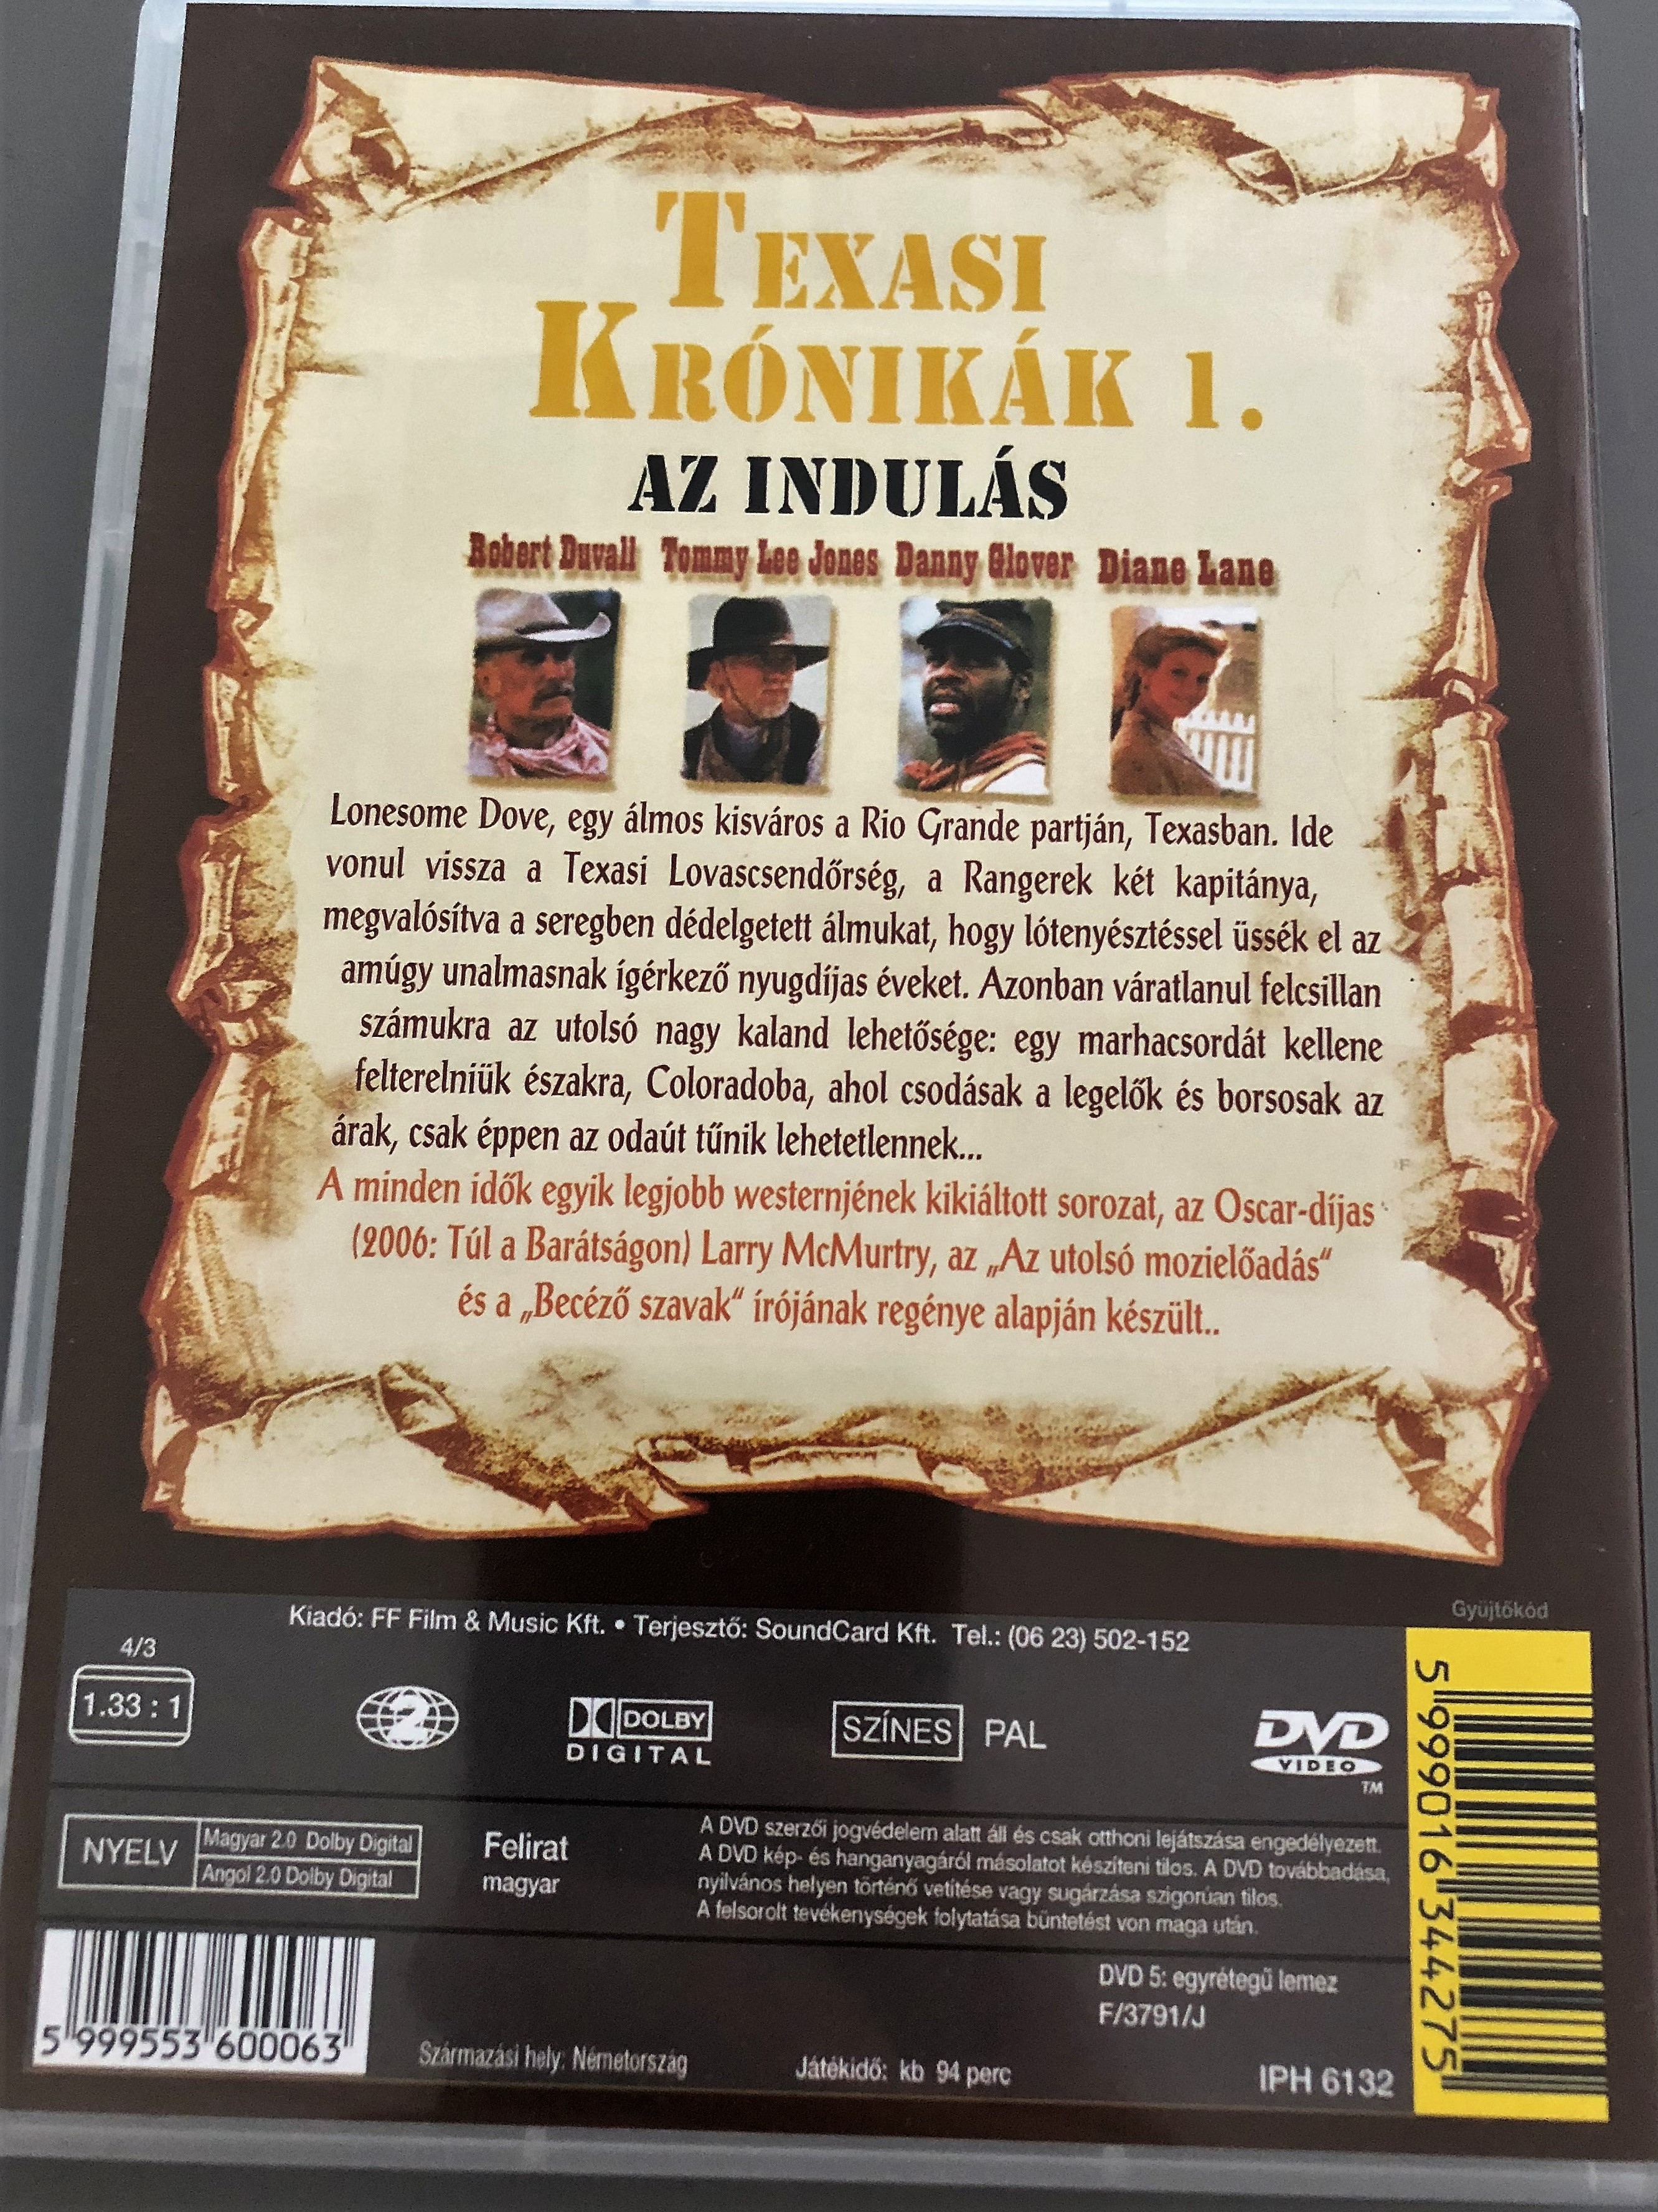 lonesome-dove-dvd-1989-texasi-kr-nik-k-1.-az-indul-s-directed-by-simon-wincer-starring-robert-duvall-tommy-lee-jones-danny-glover-diane-lane-anjelica-huston-2-.jpg